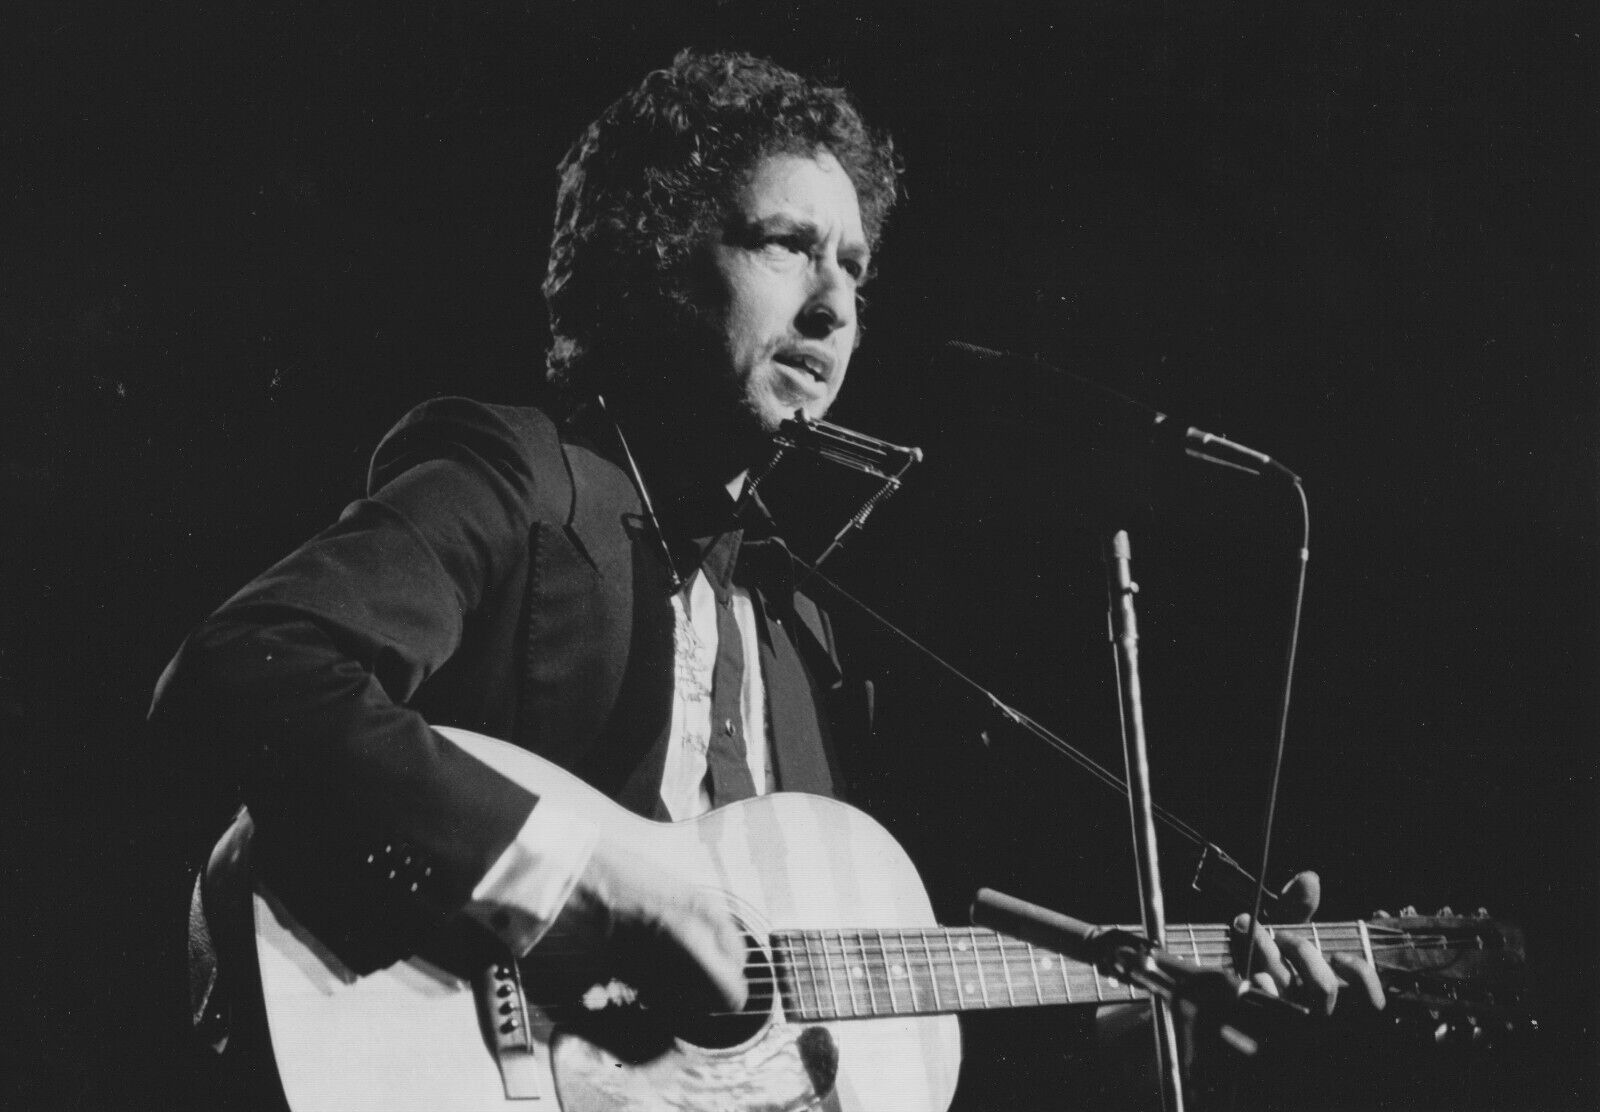 8x10 B&W photo print of Bob Dylan